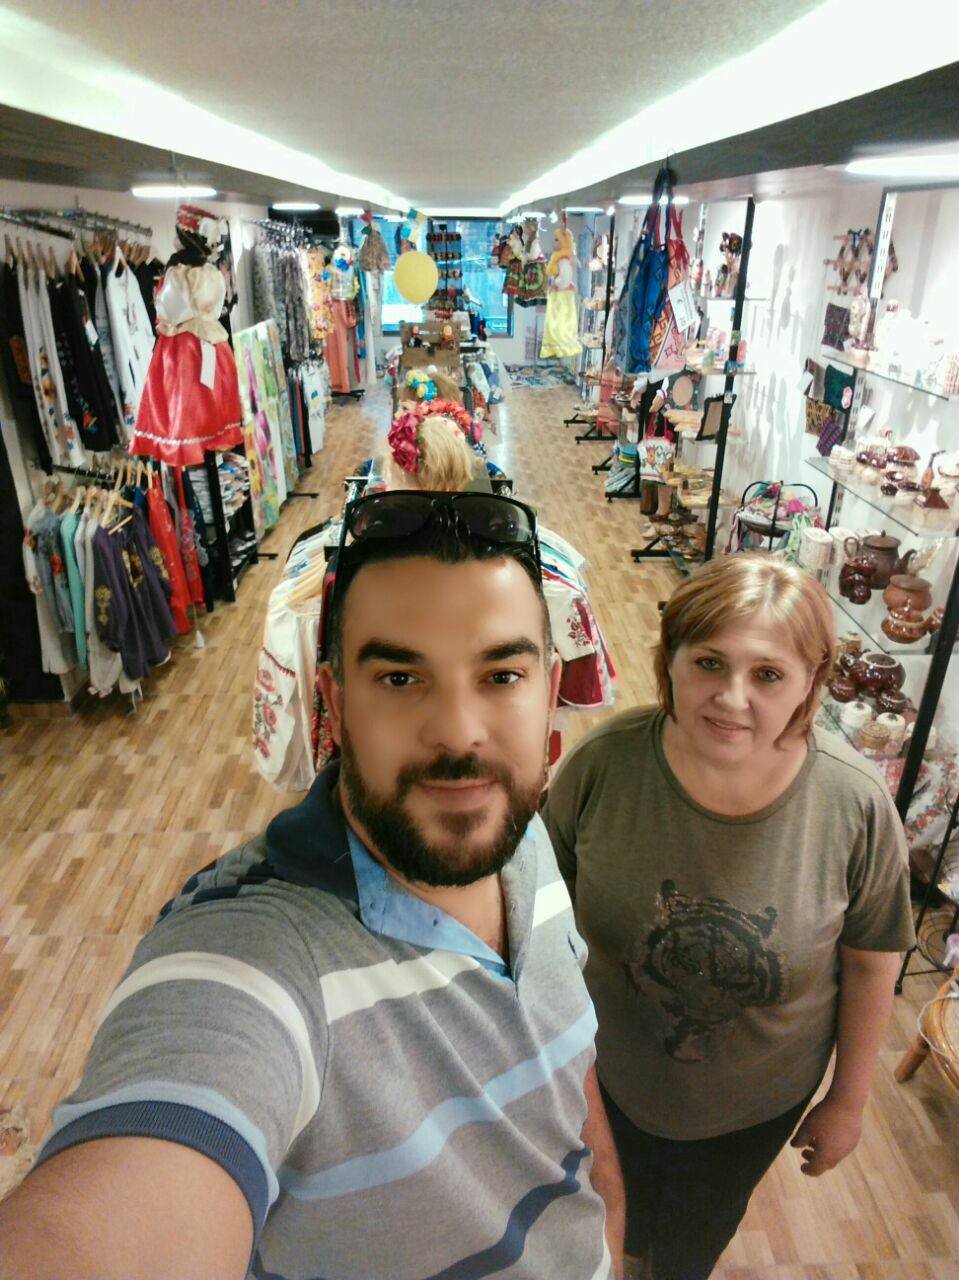 Ірина Варава відкрила перший магазин українських непродовольчих товарів у столиці Йорданії Аммані.

